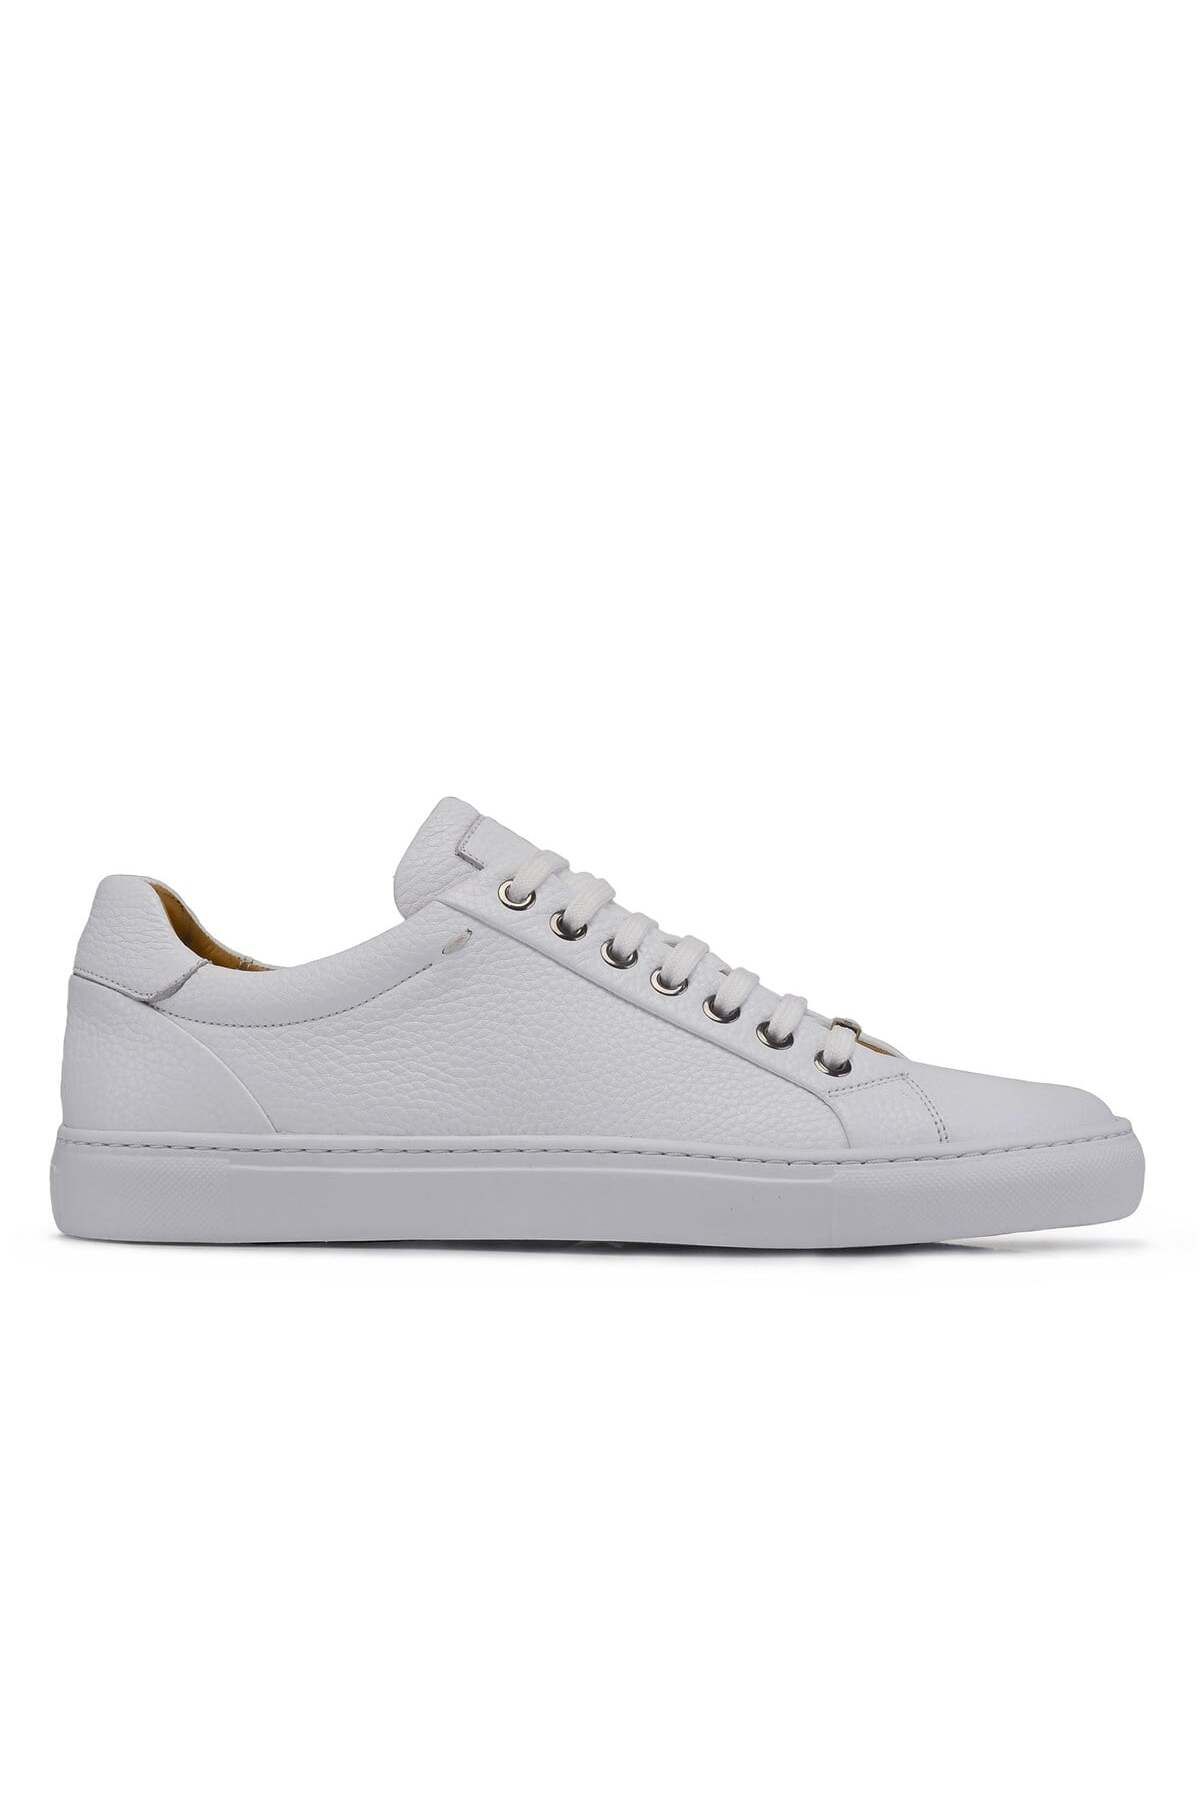 Nevzat Onay Beyaz Sneaker Erkek Ayakkabı -12373-